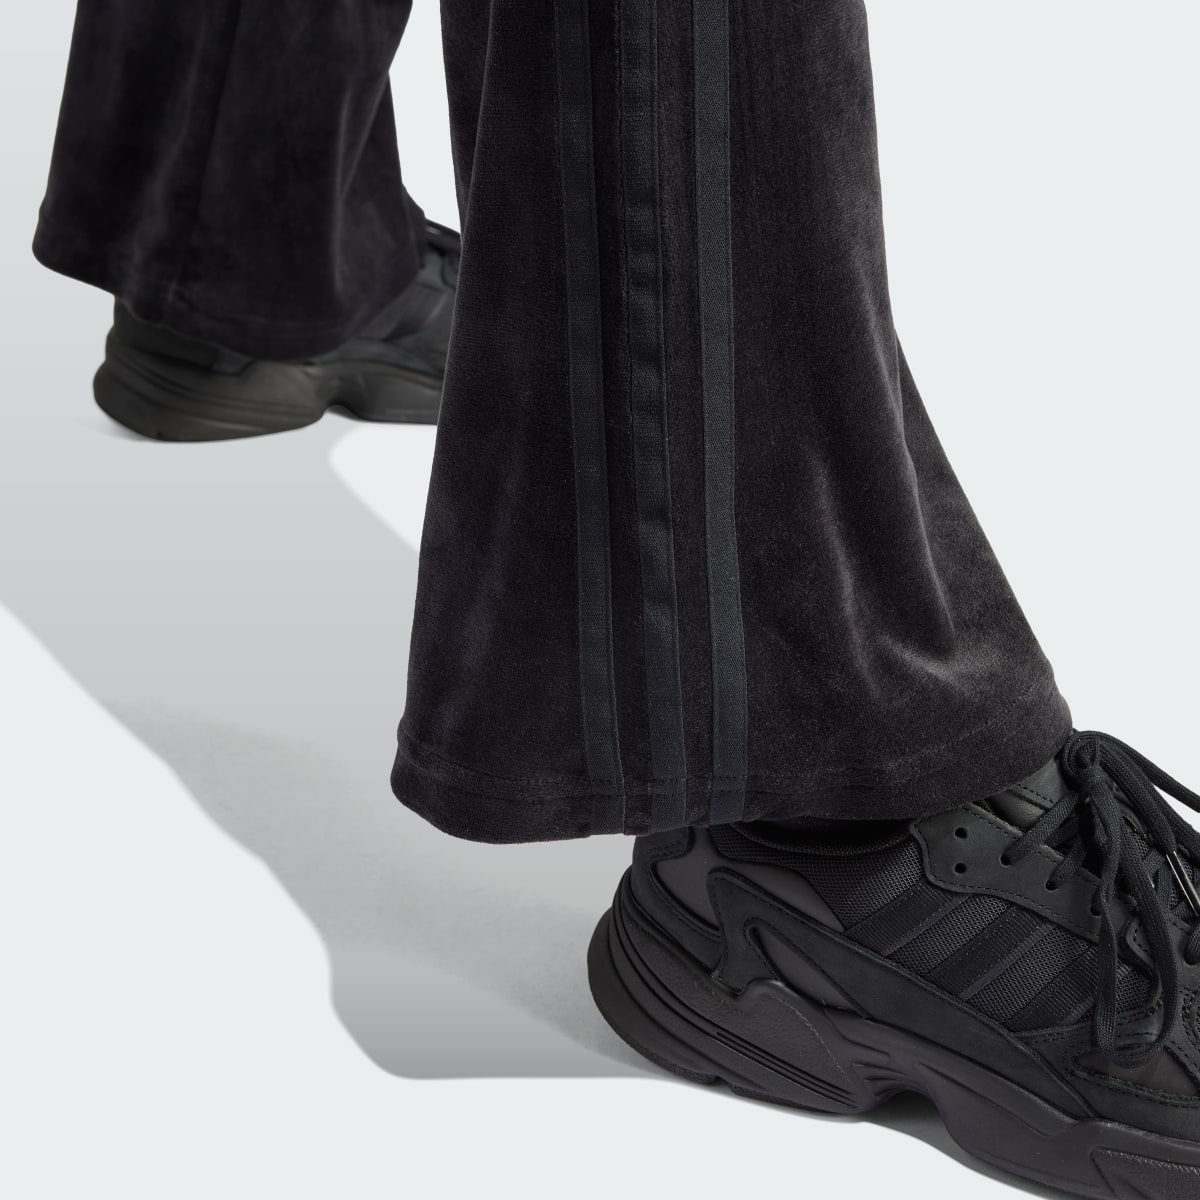 Adidas Crushed Velvet Flared Pants. 5